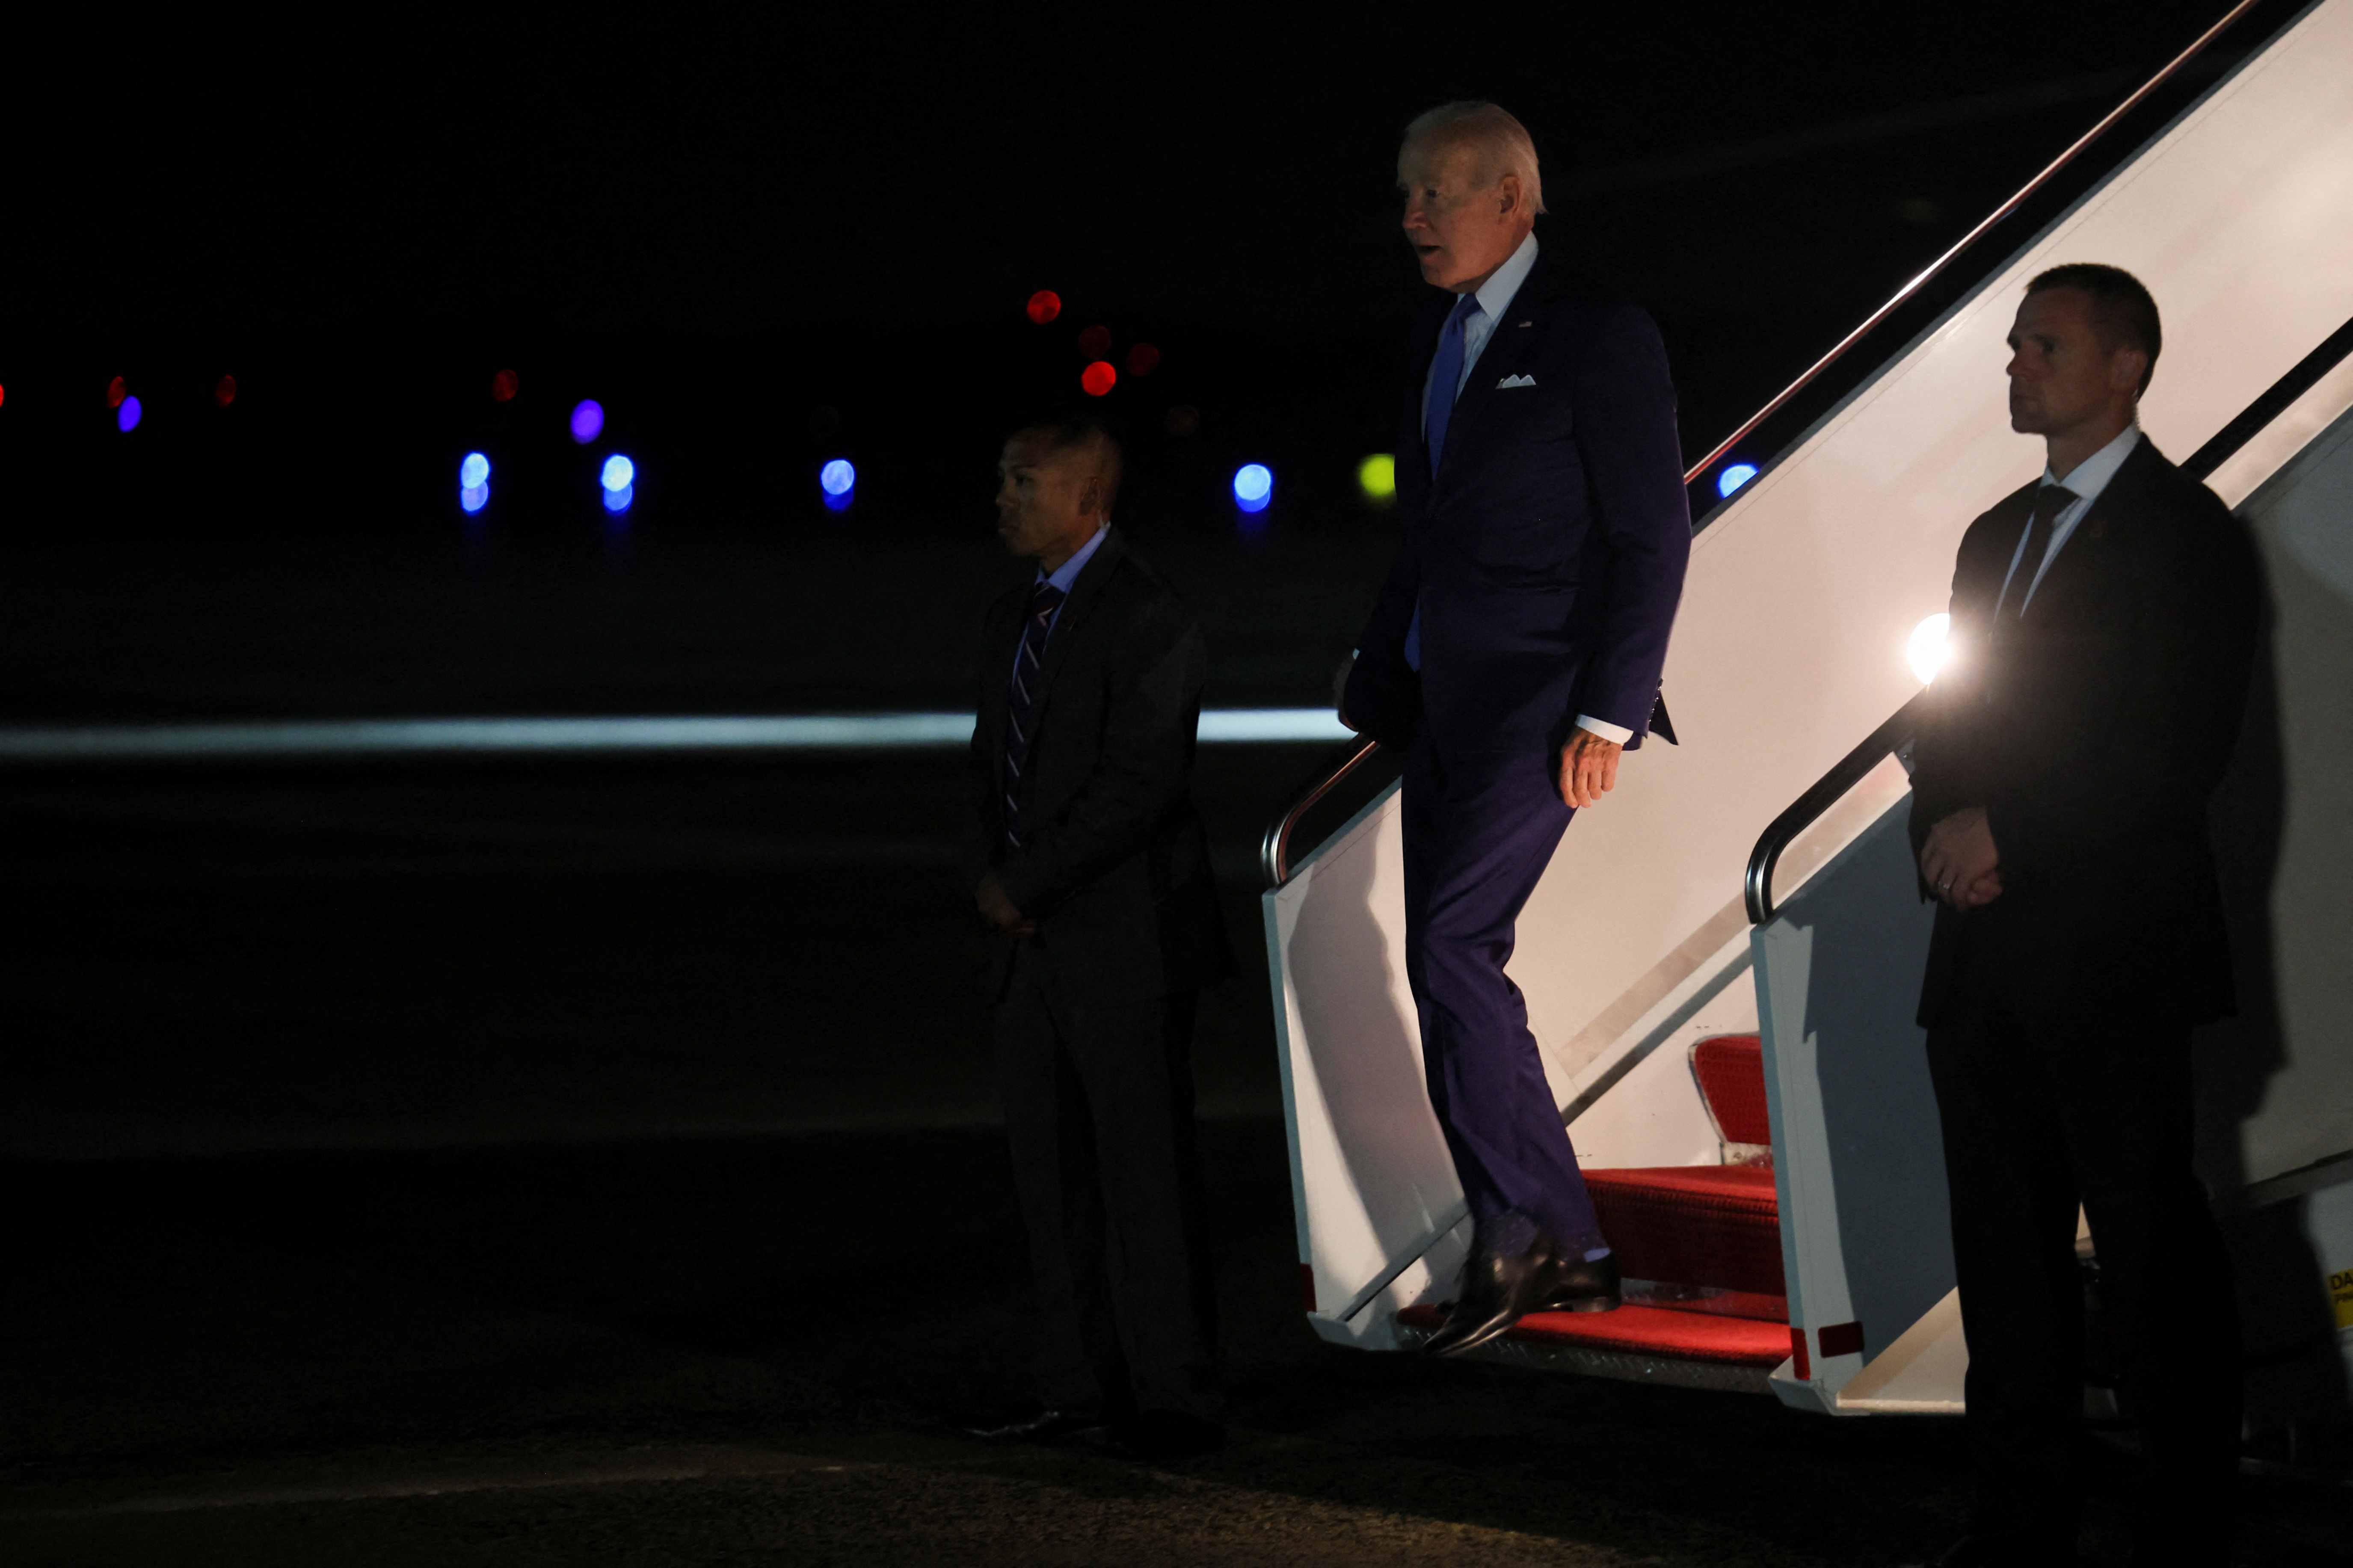 El presidente, Joe Biden, regresó a suelo norteamericano tras concluir su gira en la que se reunió con los líderes de Israel, Irak, Egipto y Emiratos Árabes Unidos